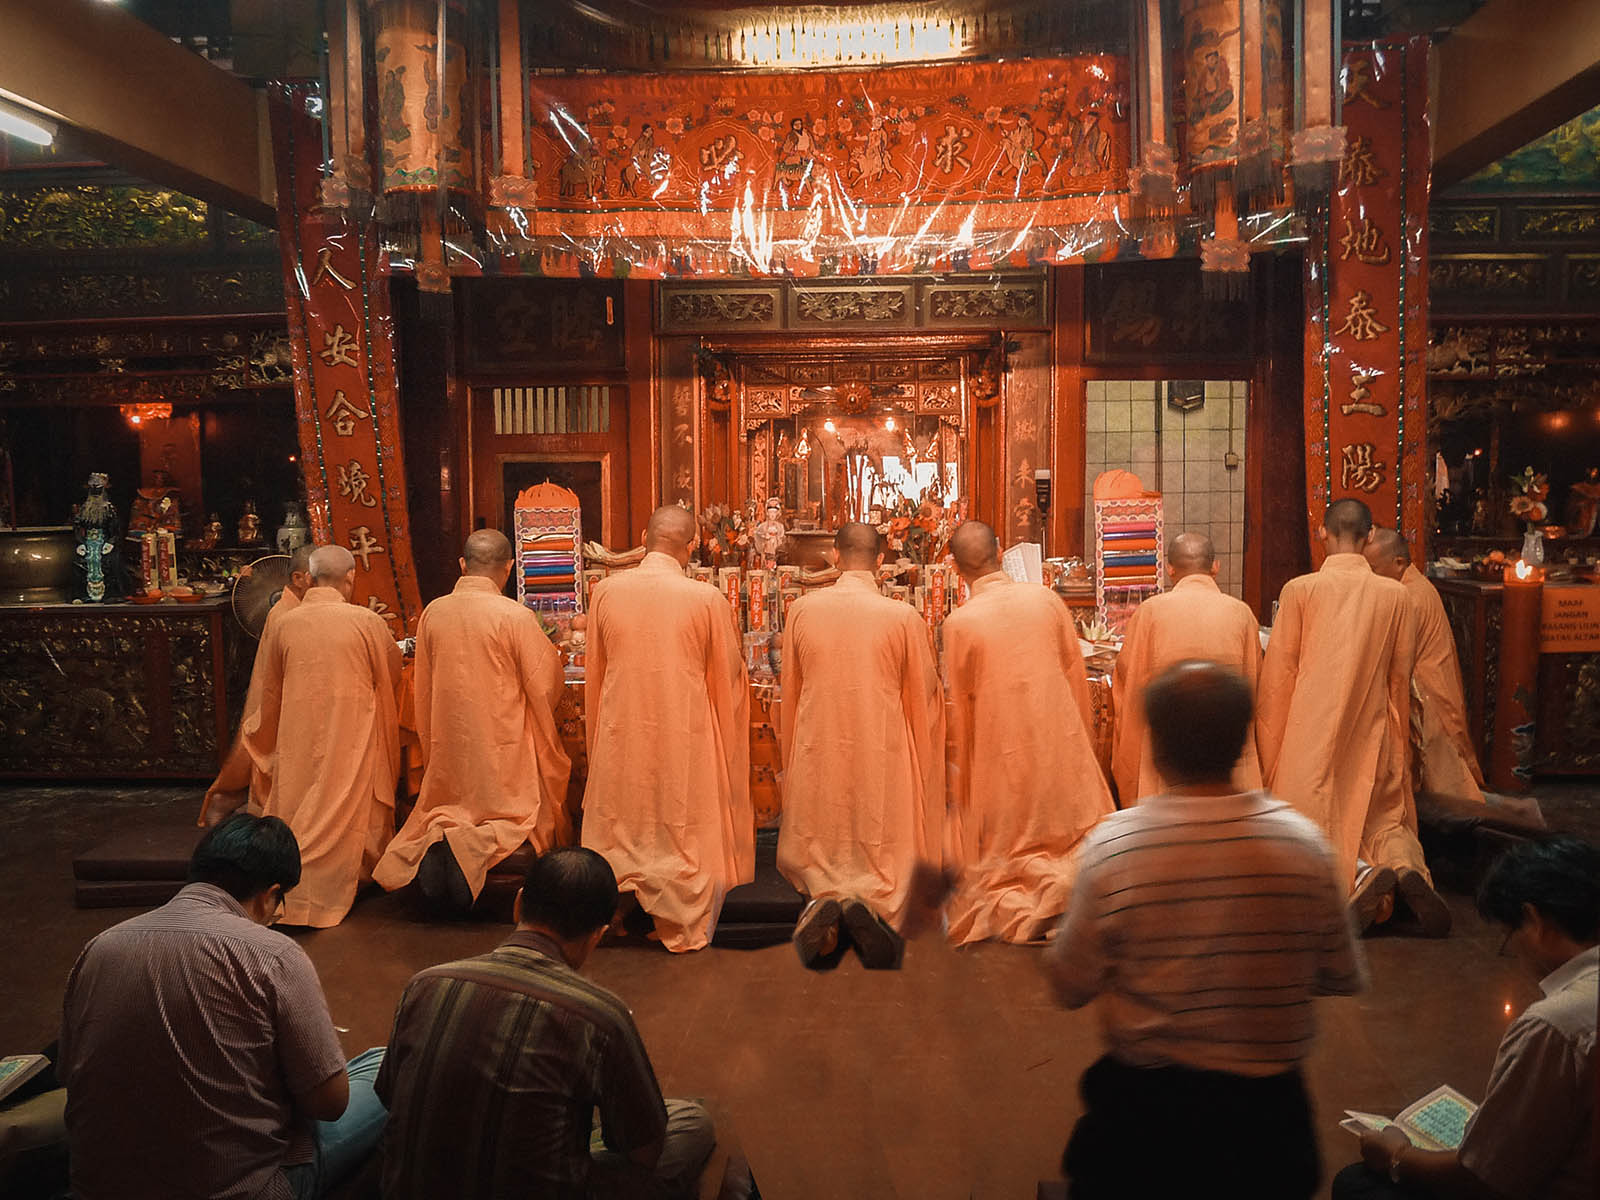 Jakarta vedere e fare: monaci taoisti pregano nel tempio.